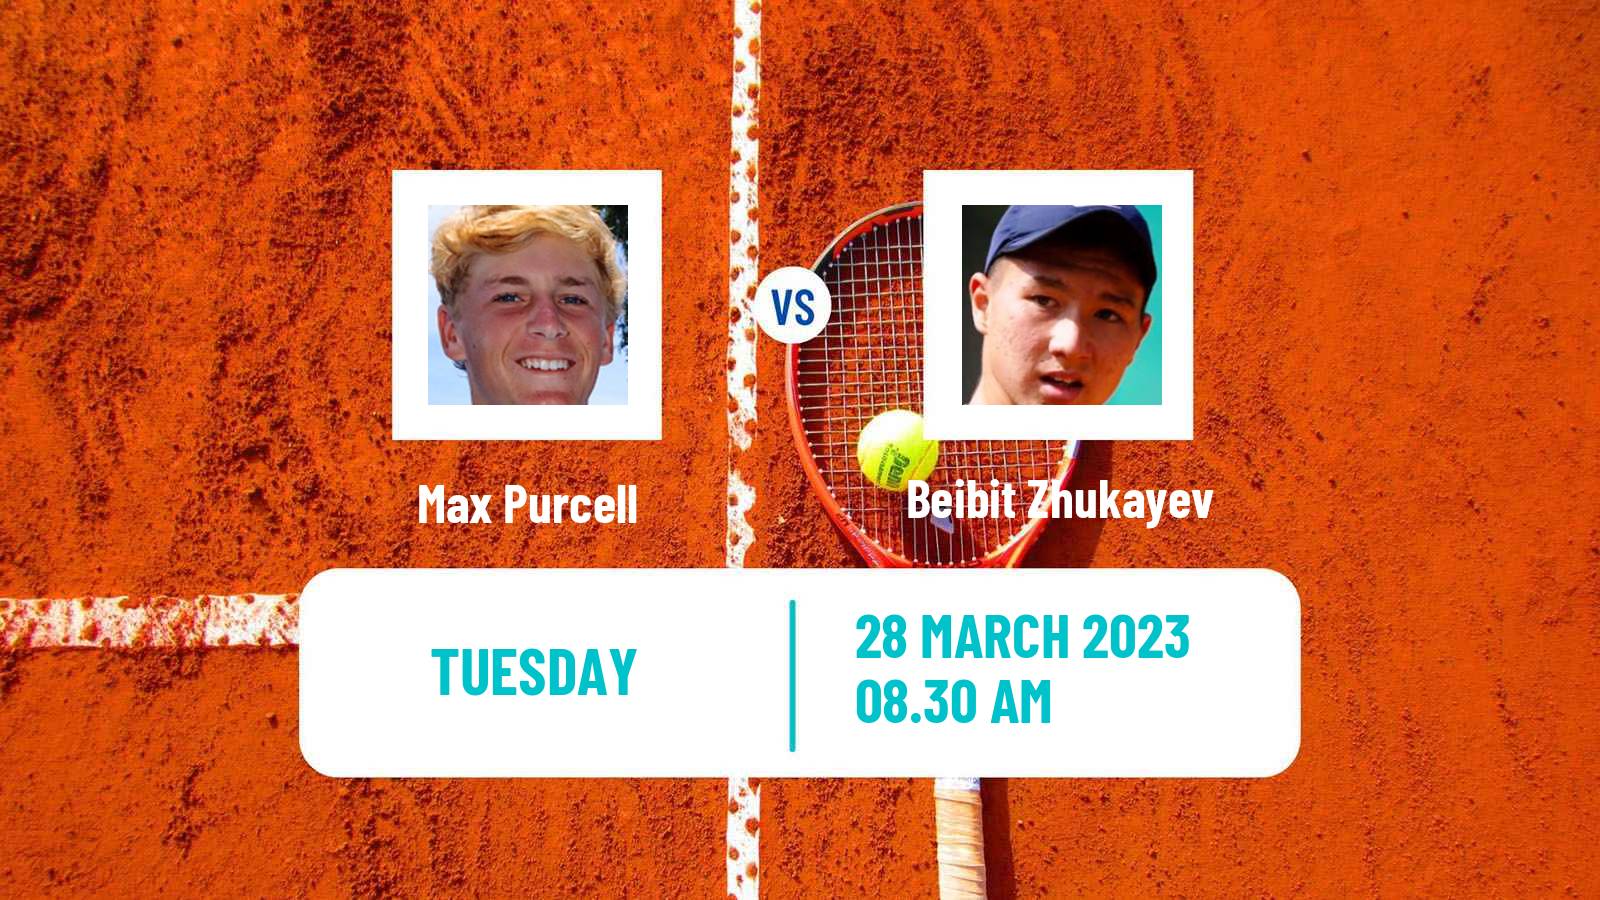 Tennis ATP Challenger Max Purcell - Beibit Zhukayev